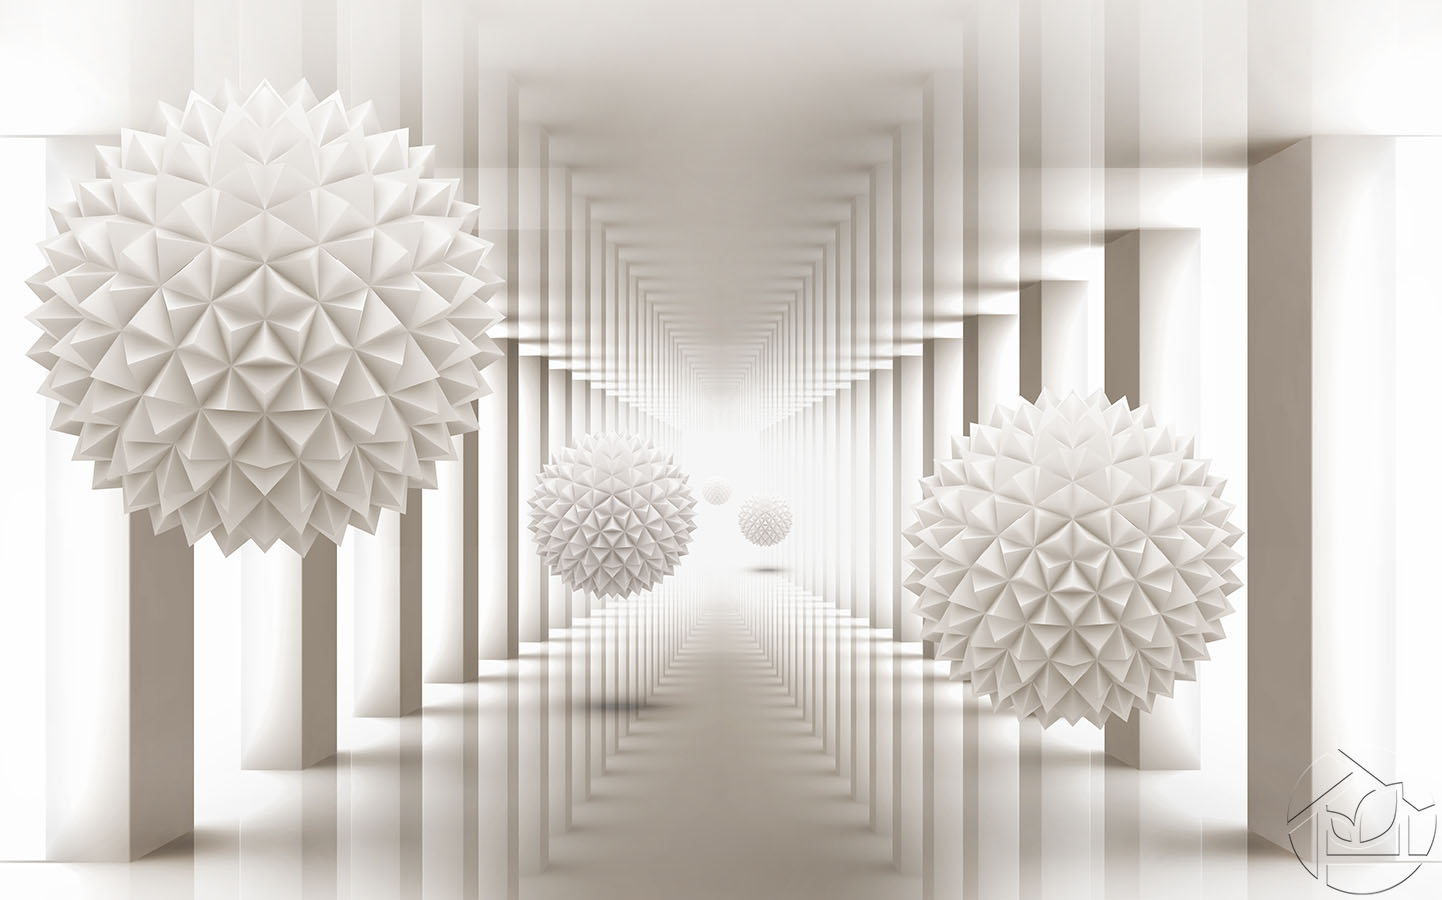 3D абстракция сфера в  коридоре с отражающей поверхностью